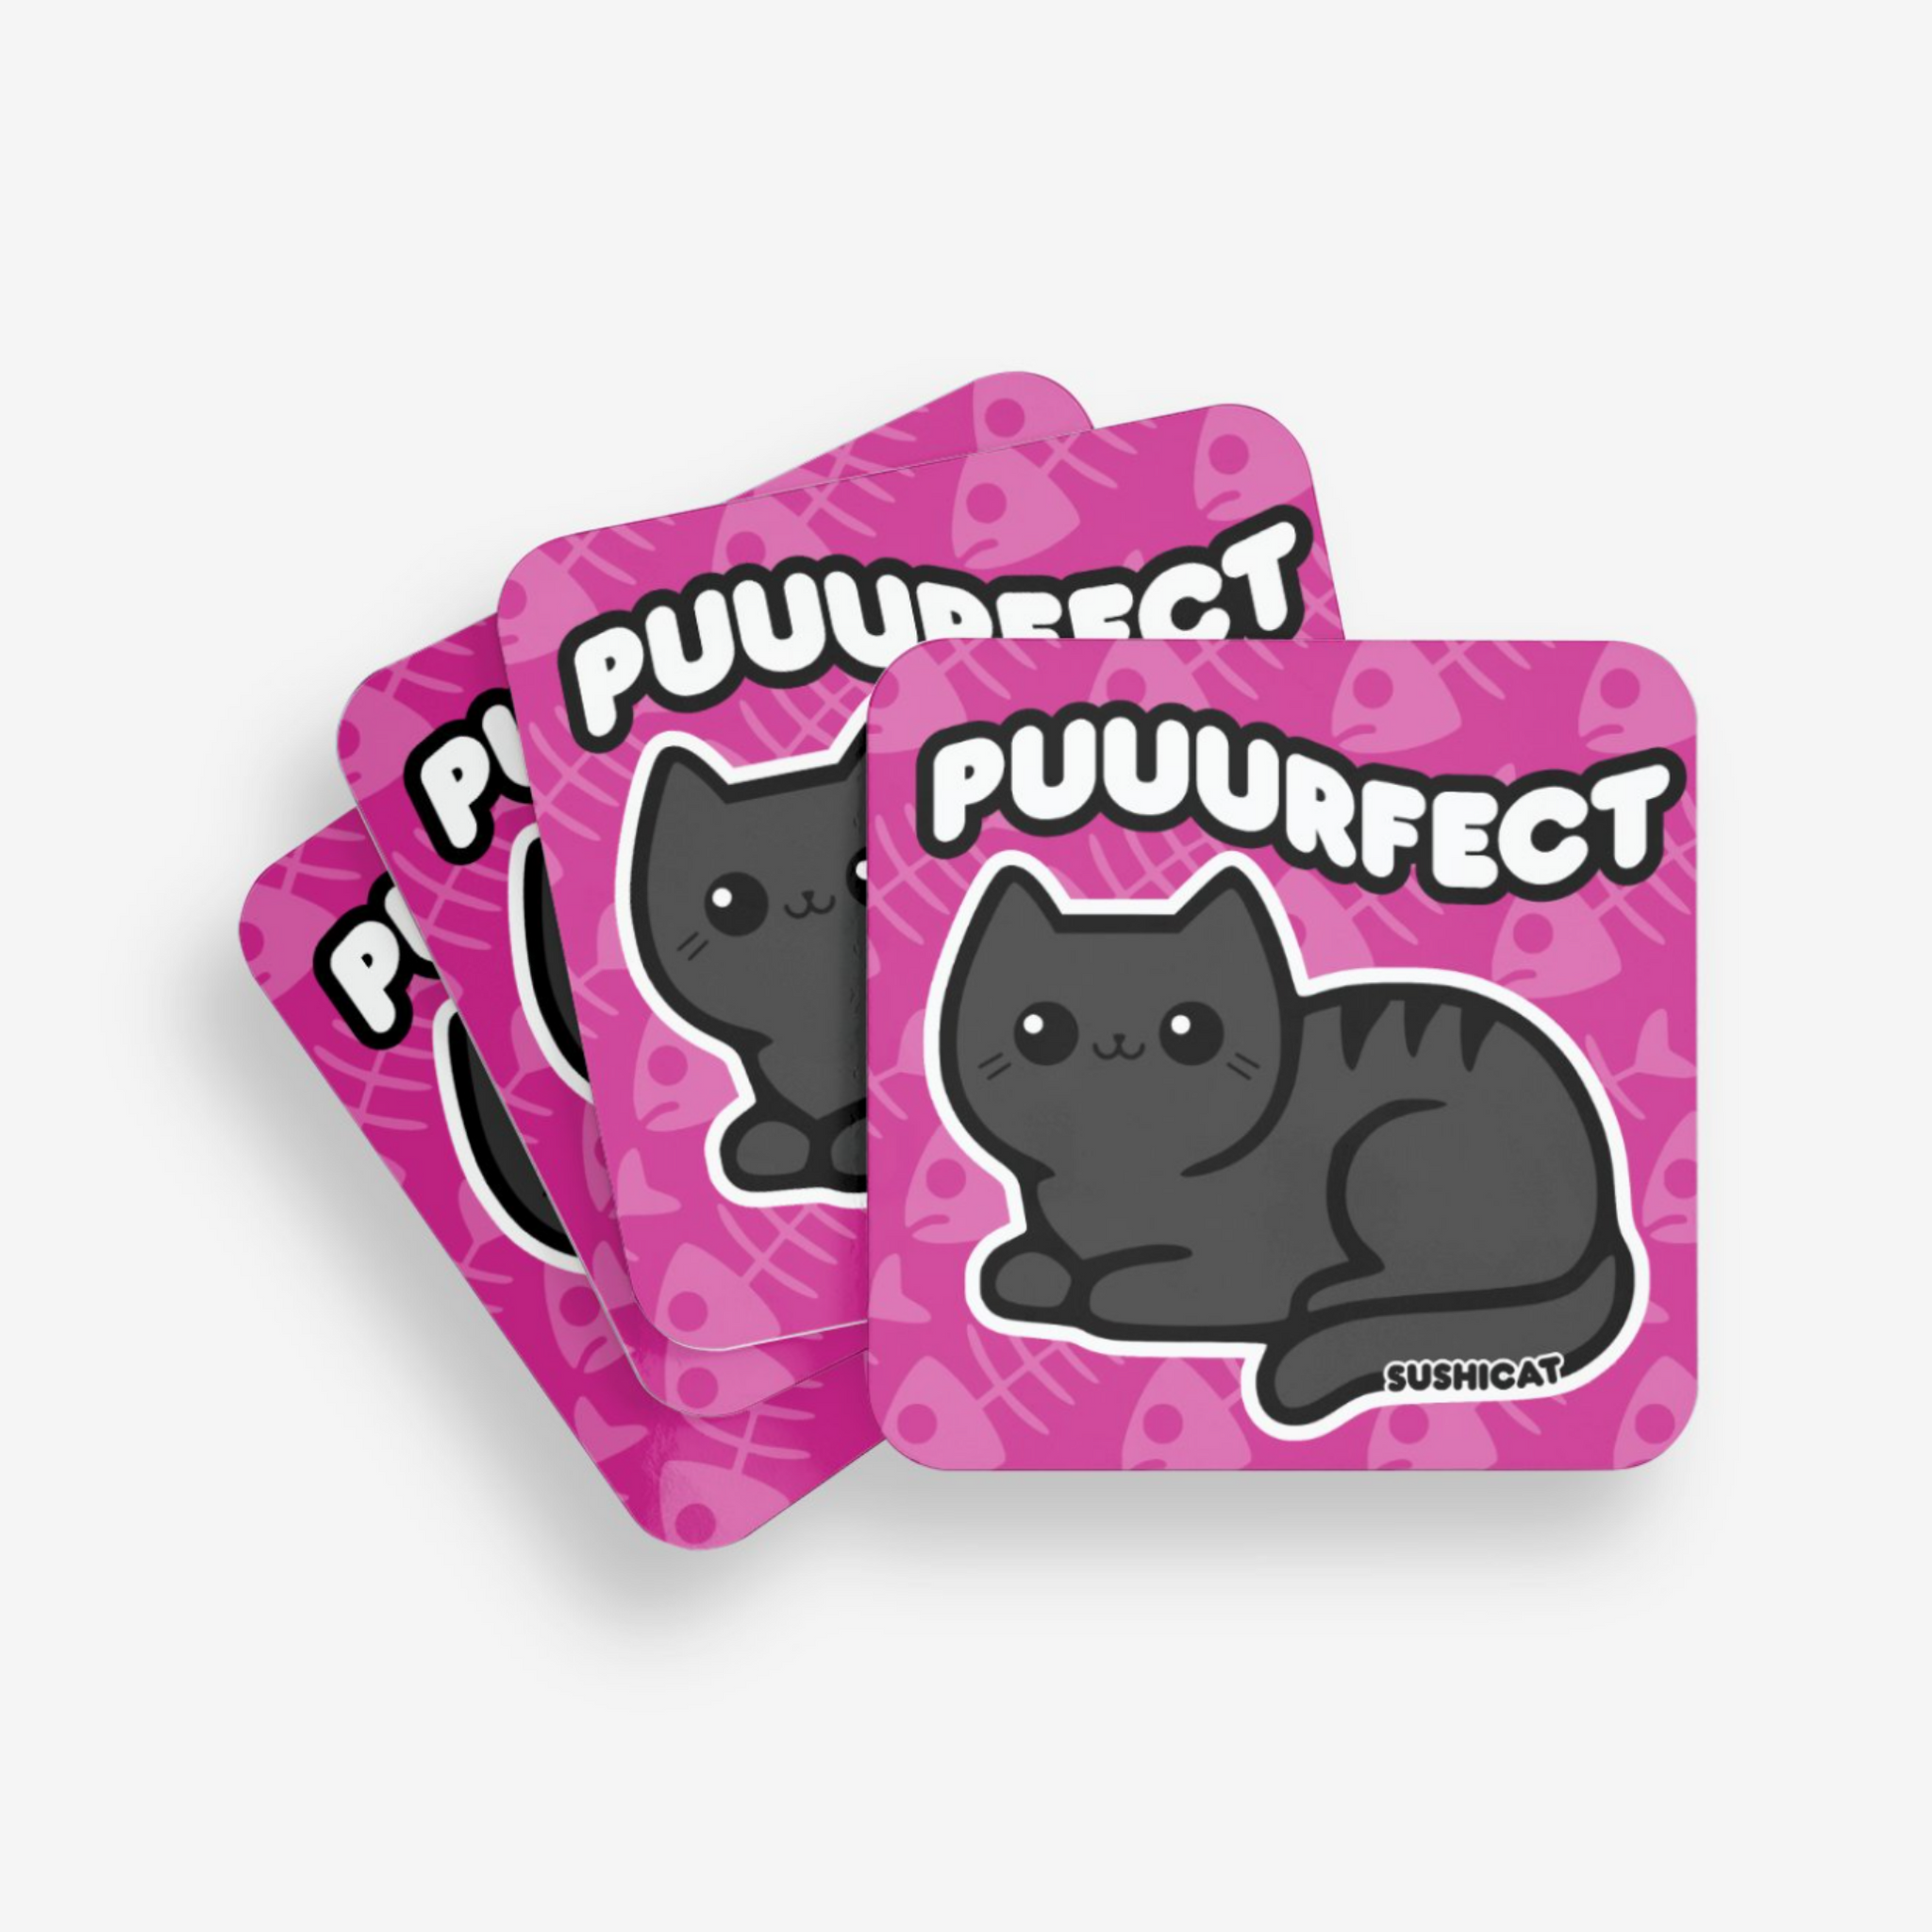 Puuurfect Coaster - Sushi Cat Studios